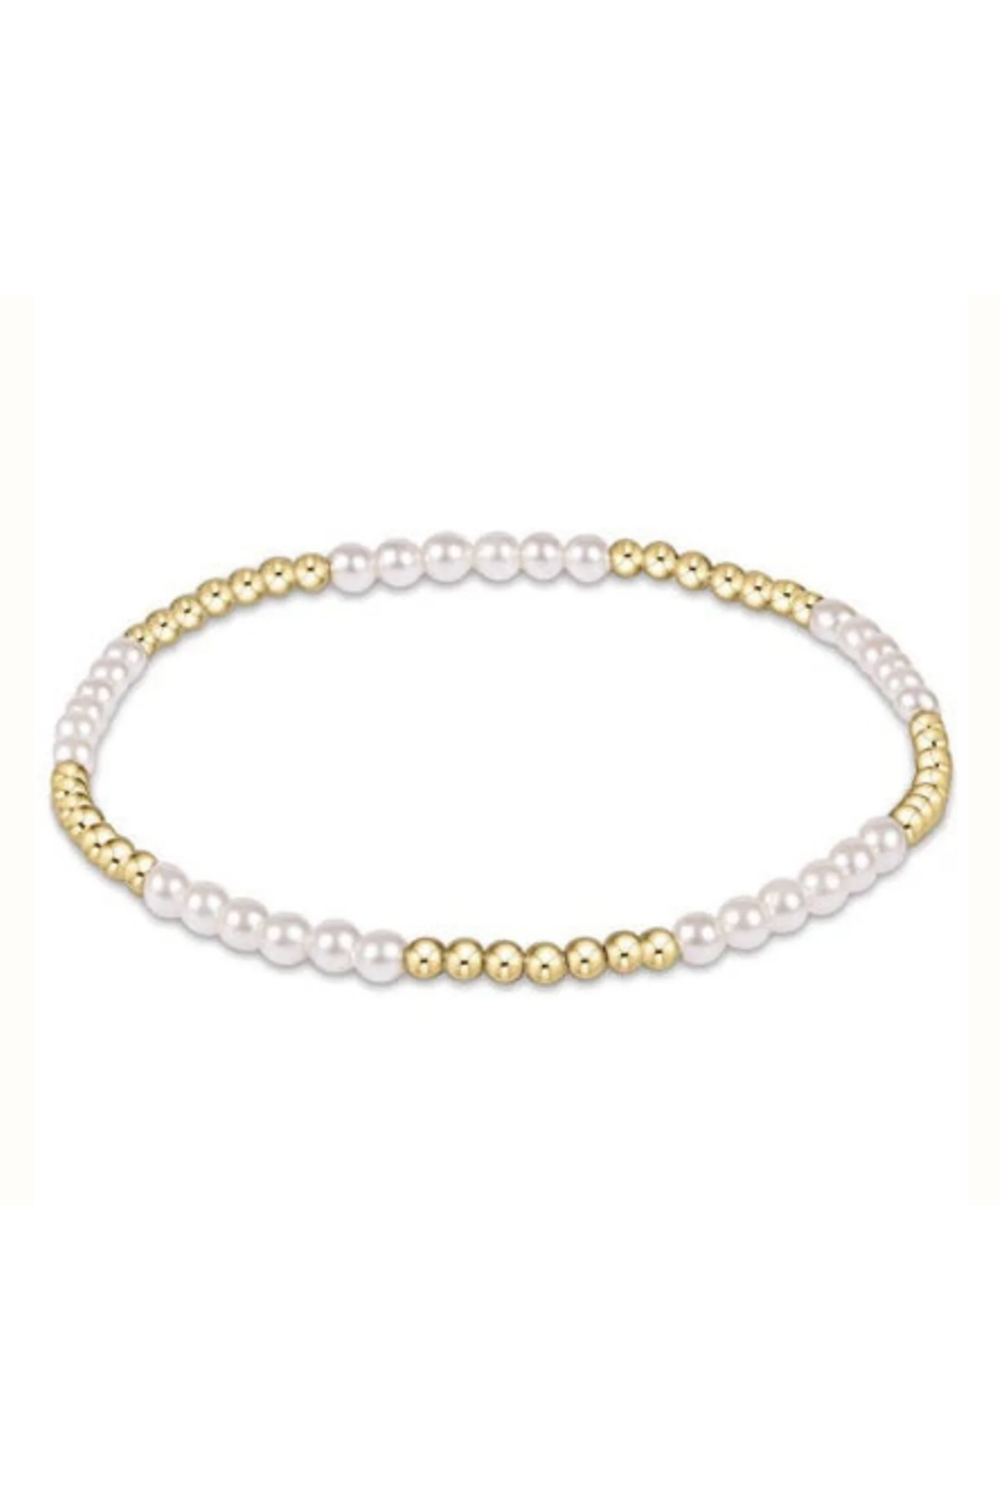 EN Classic Blissful Pattern Bracelet - Gold + Pearl